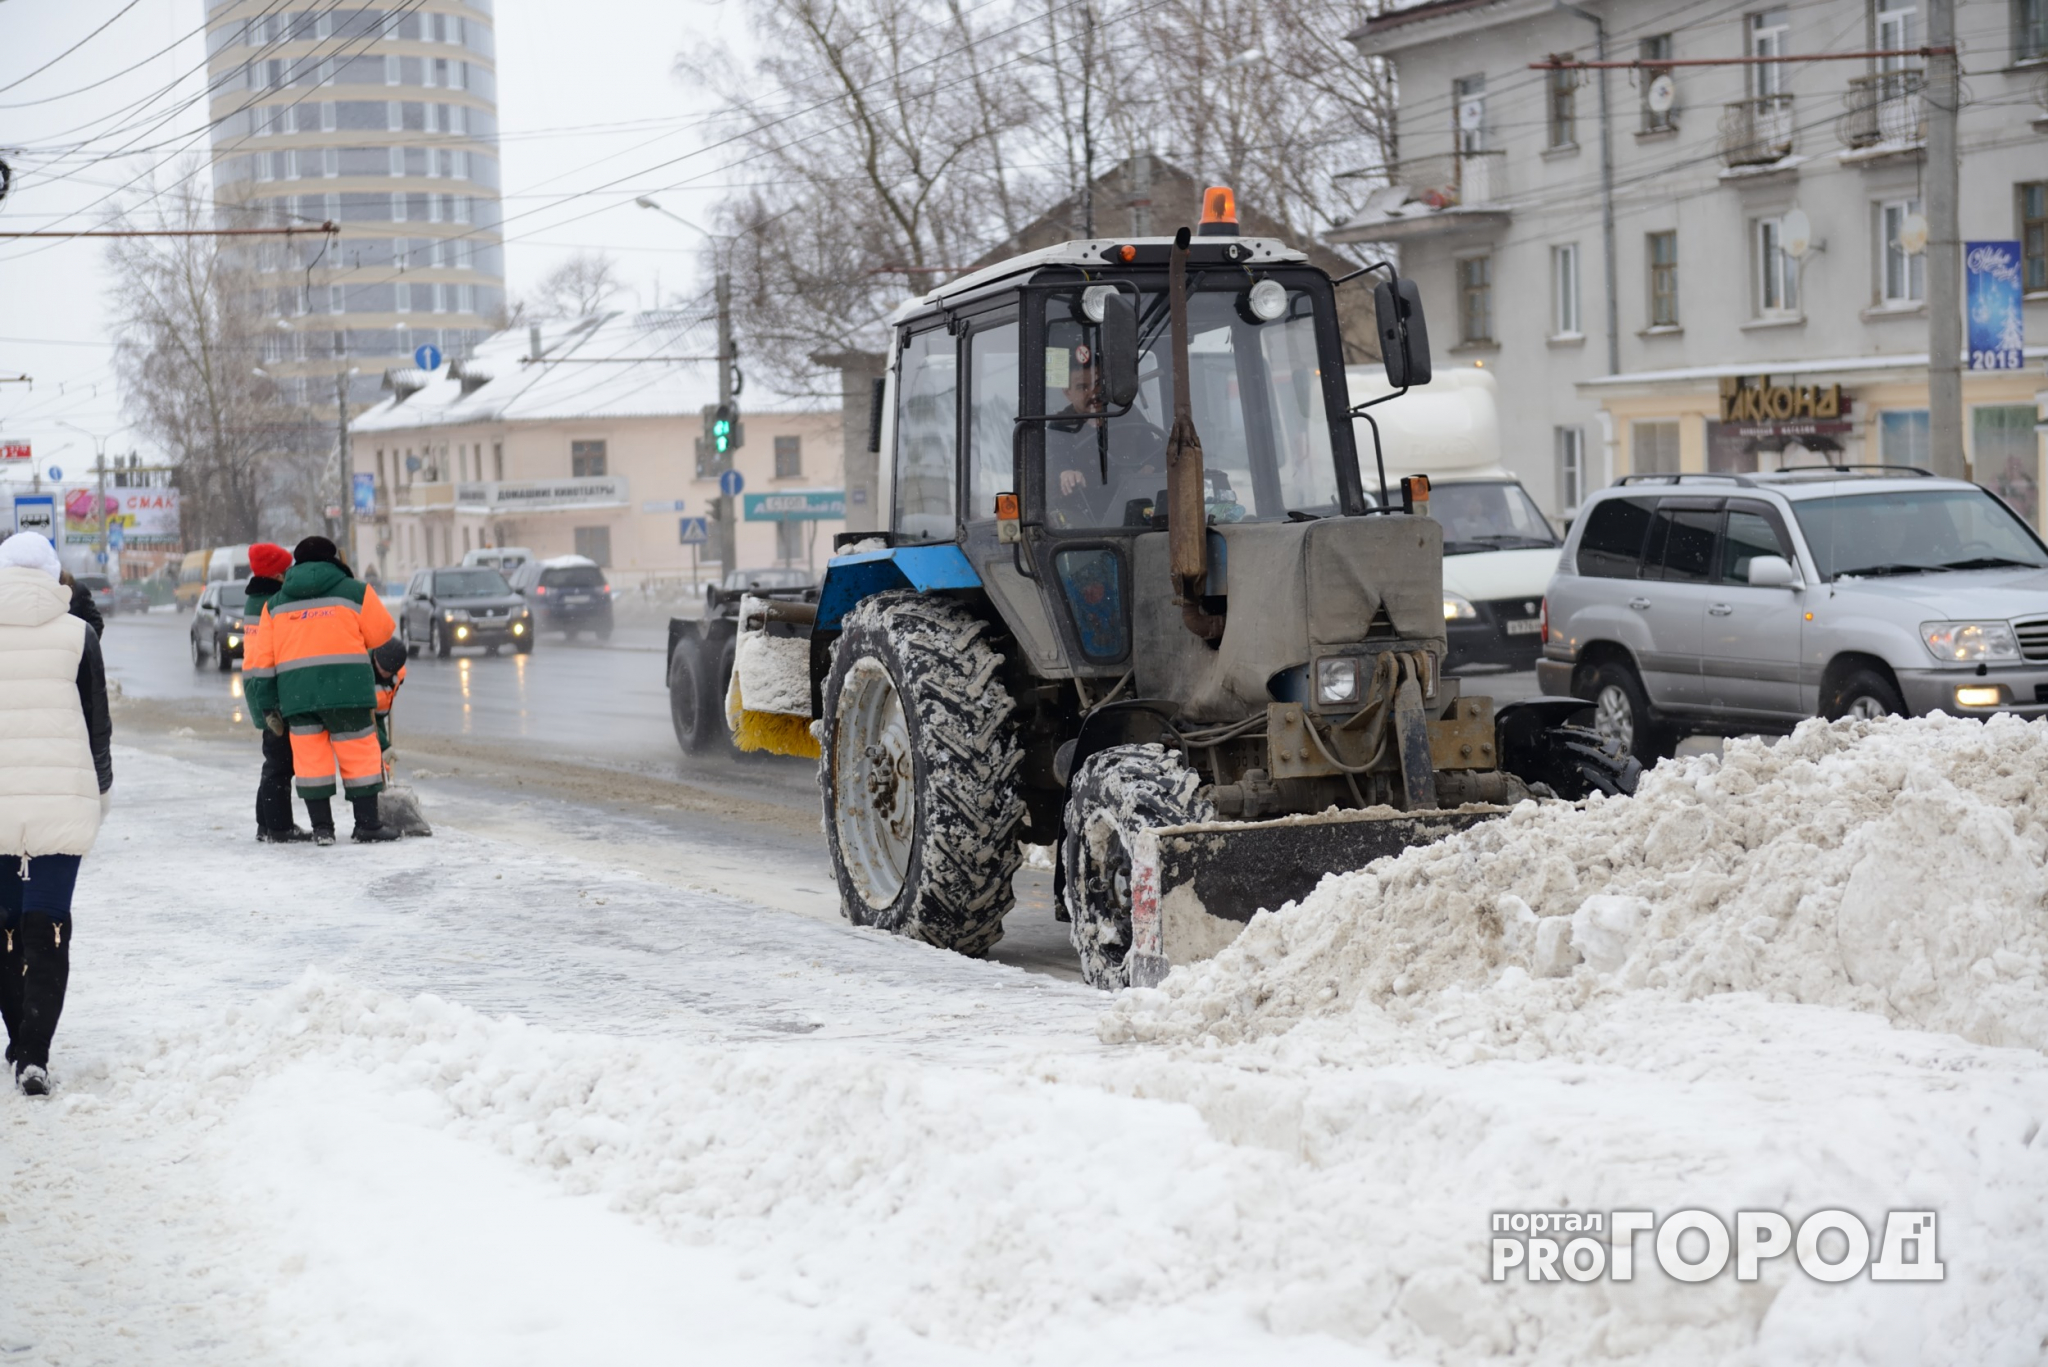 Улицы Нижнего очищают от снега более 2 тысяч дворников и 420 единиц техники